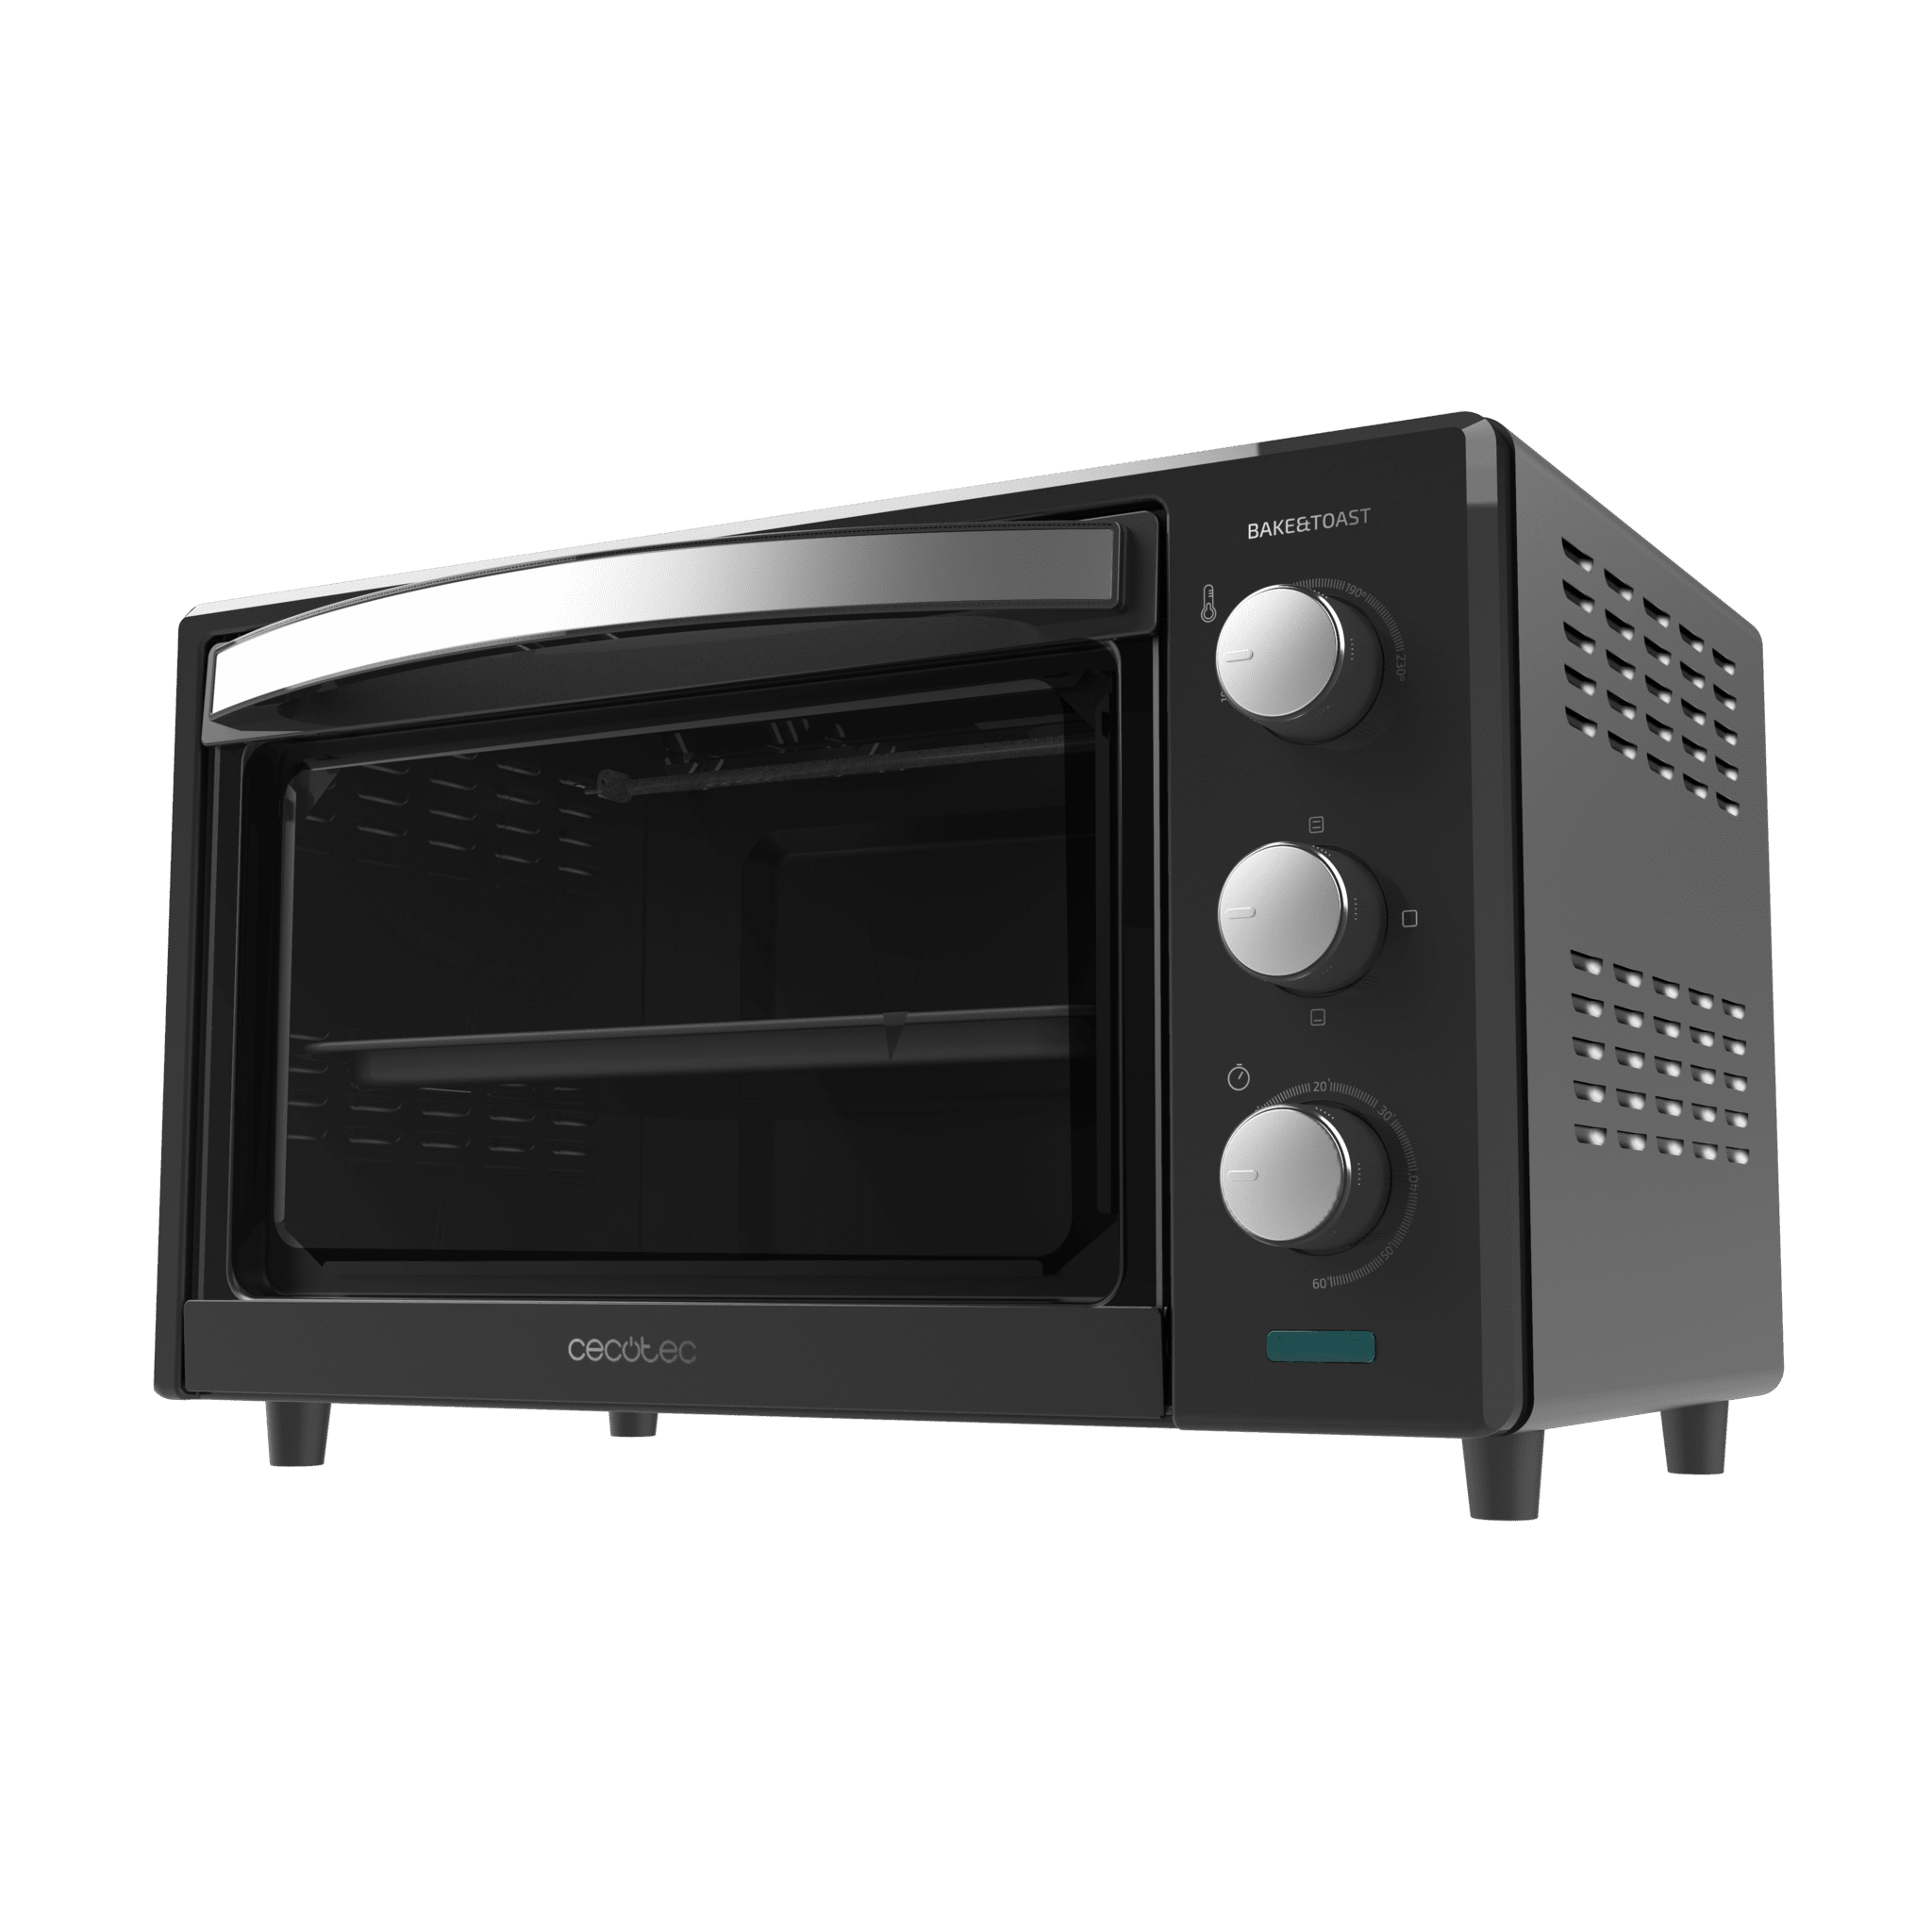 Tischbackofen Bake&Toast 2400 Black  1500 W, 3 Heizmodi, Zeitschaltuhr, einstellbare Temperatur, doppelt verglaste Tür und Edelstahlausführungen